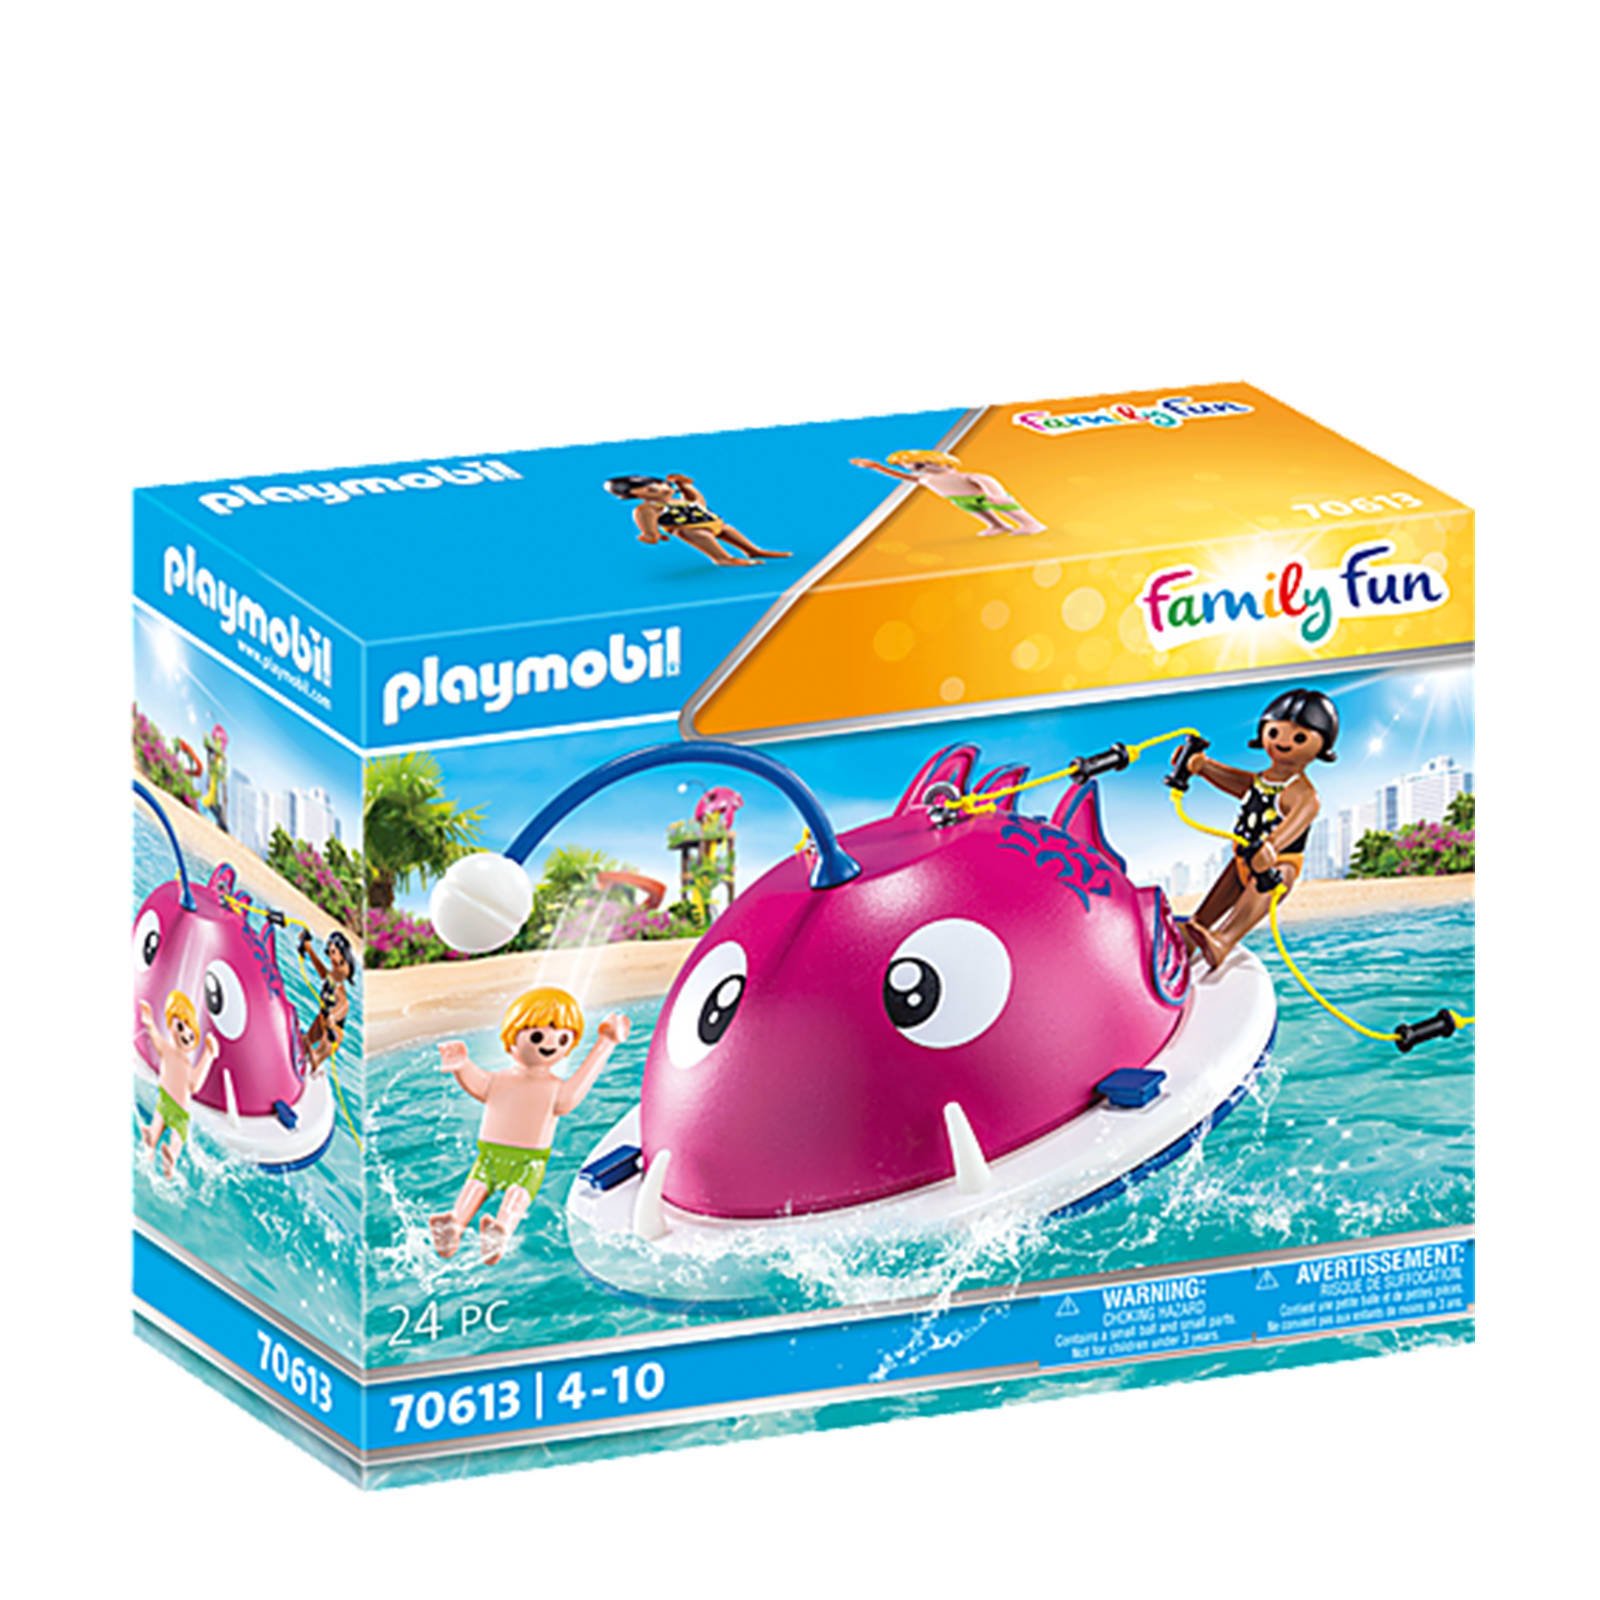 Playmobil ® Constructie speelset Beklimmen zwemeiland(70613 ), Family Fun Gemaakt in Europa(24 stuks ) online kopen